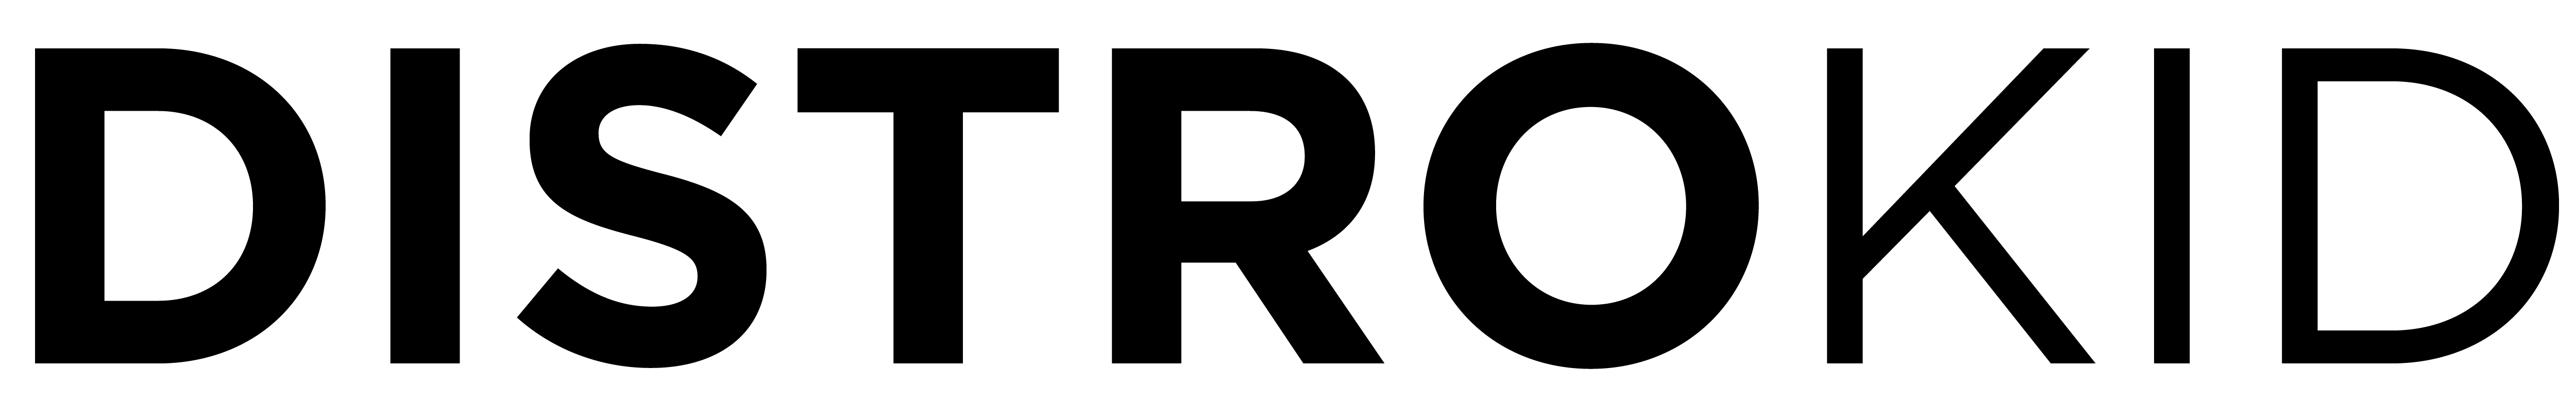 Versión negra del logo de DistroKid